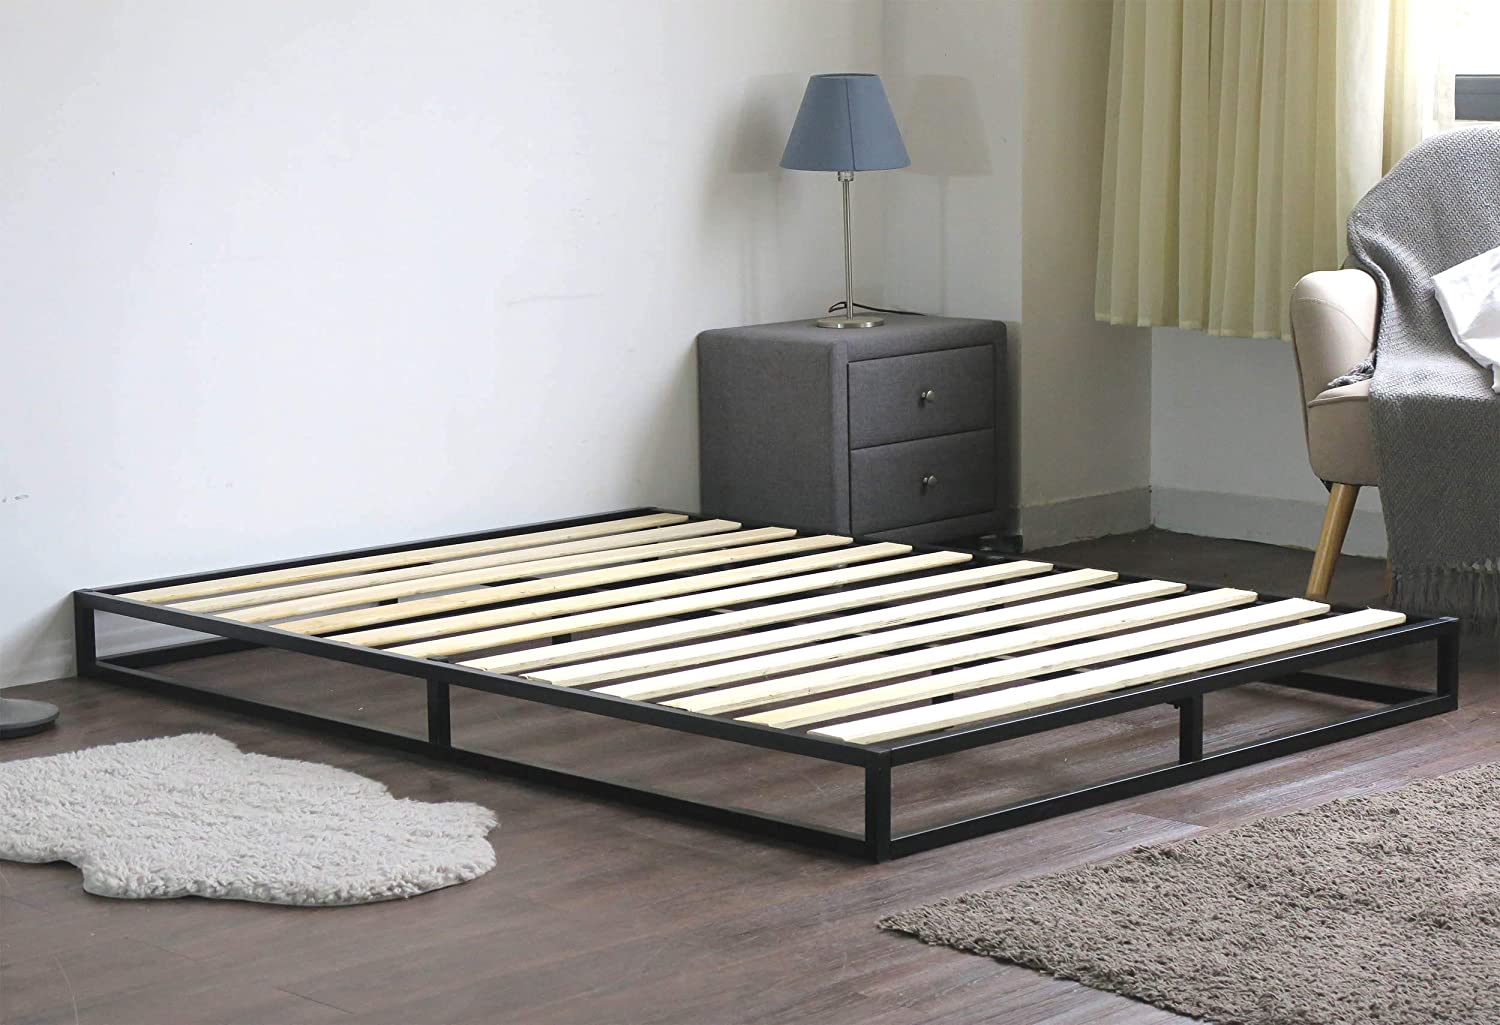 metal platform beds keeps mattress